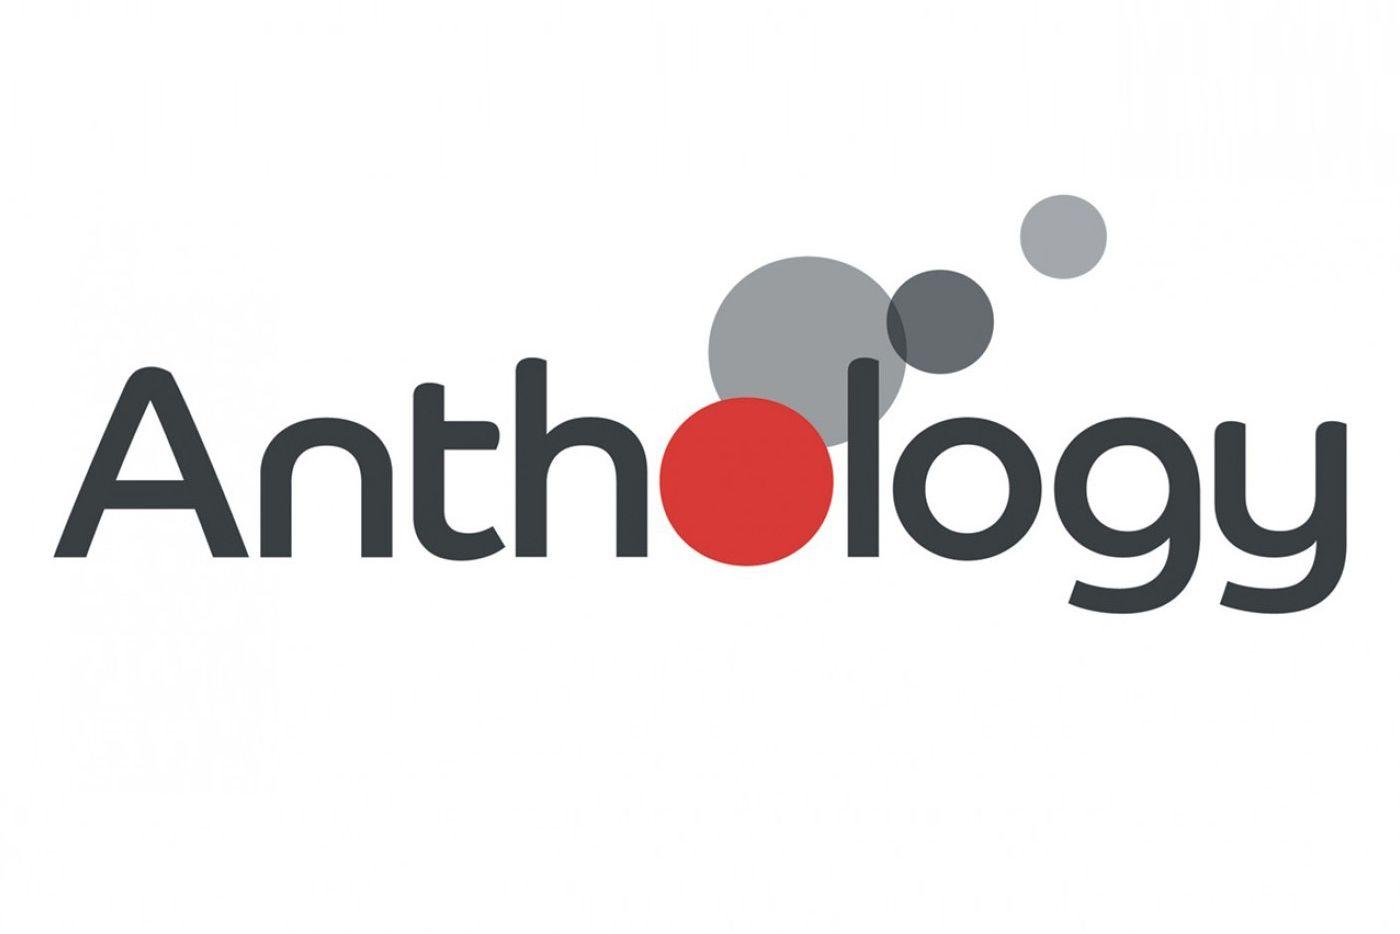 Anthology Logo - Anthology Group emerges from Bob & Co